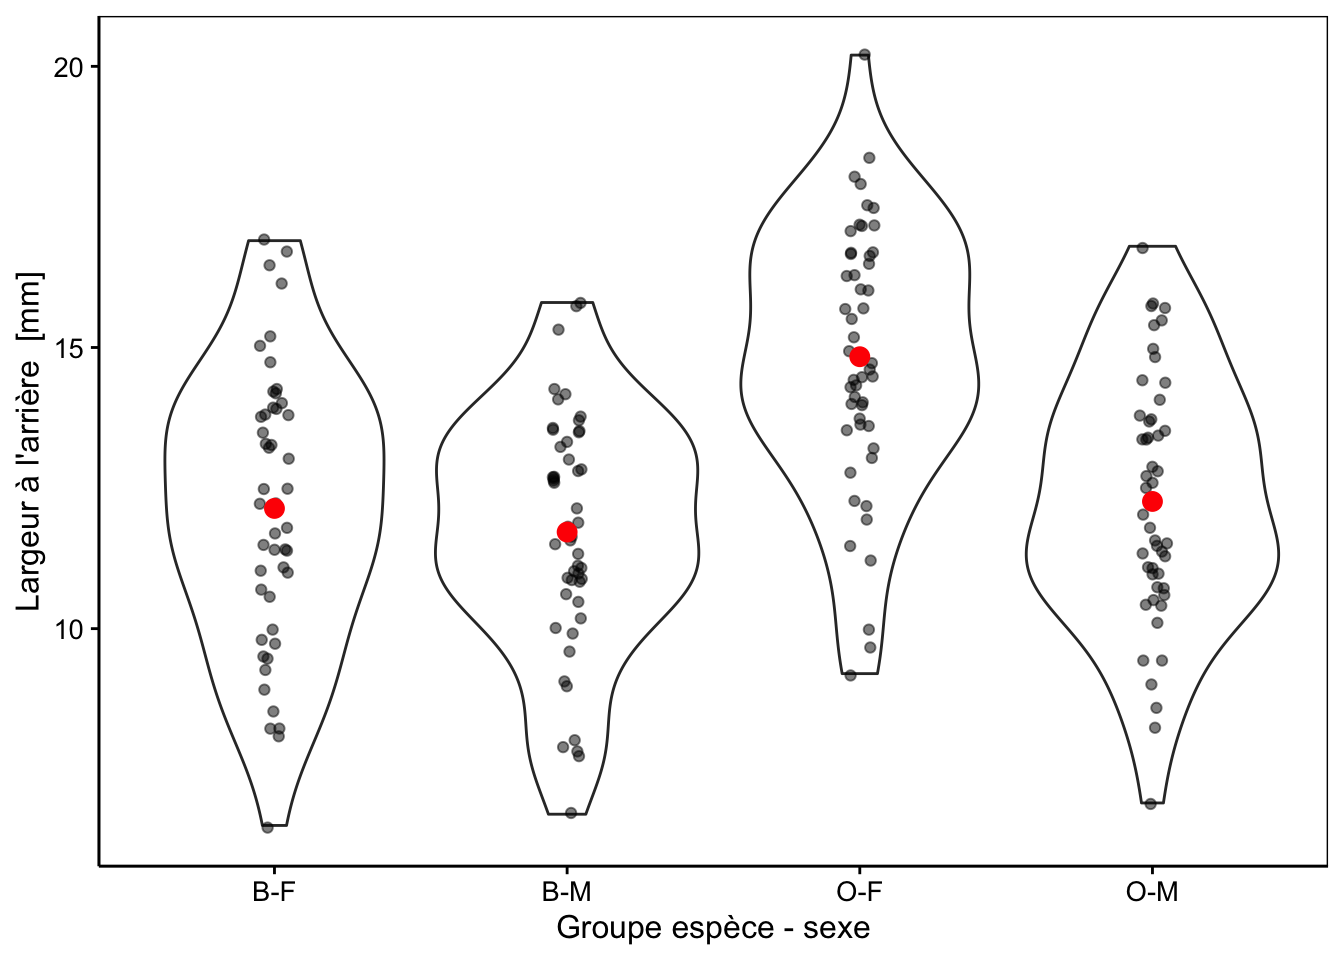 Largeur arrière en fonction du groupe de crabes *L. variegatus*. Graphique adéquat pour comparer les moyennes et distributions dans le cas d'un nombre important de réplicats (moyennes en rouge + observations individuelles en noir semi-transparent superposées à des graphiques en violon).